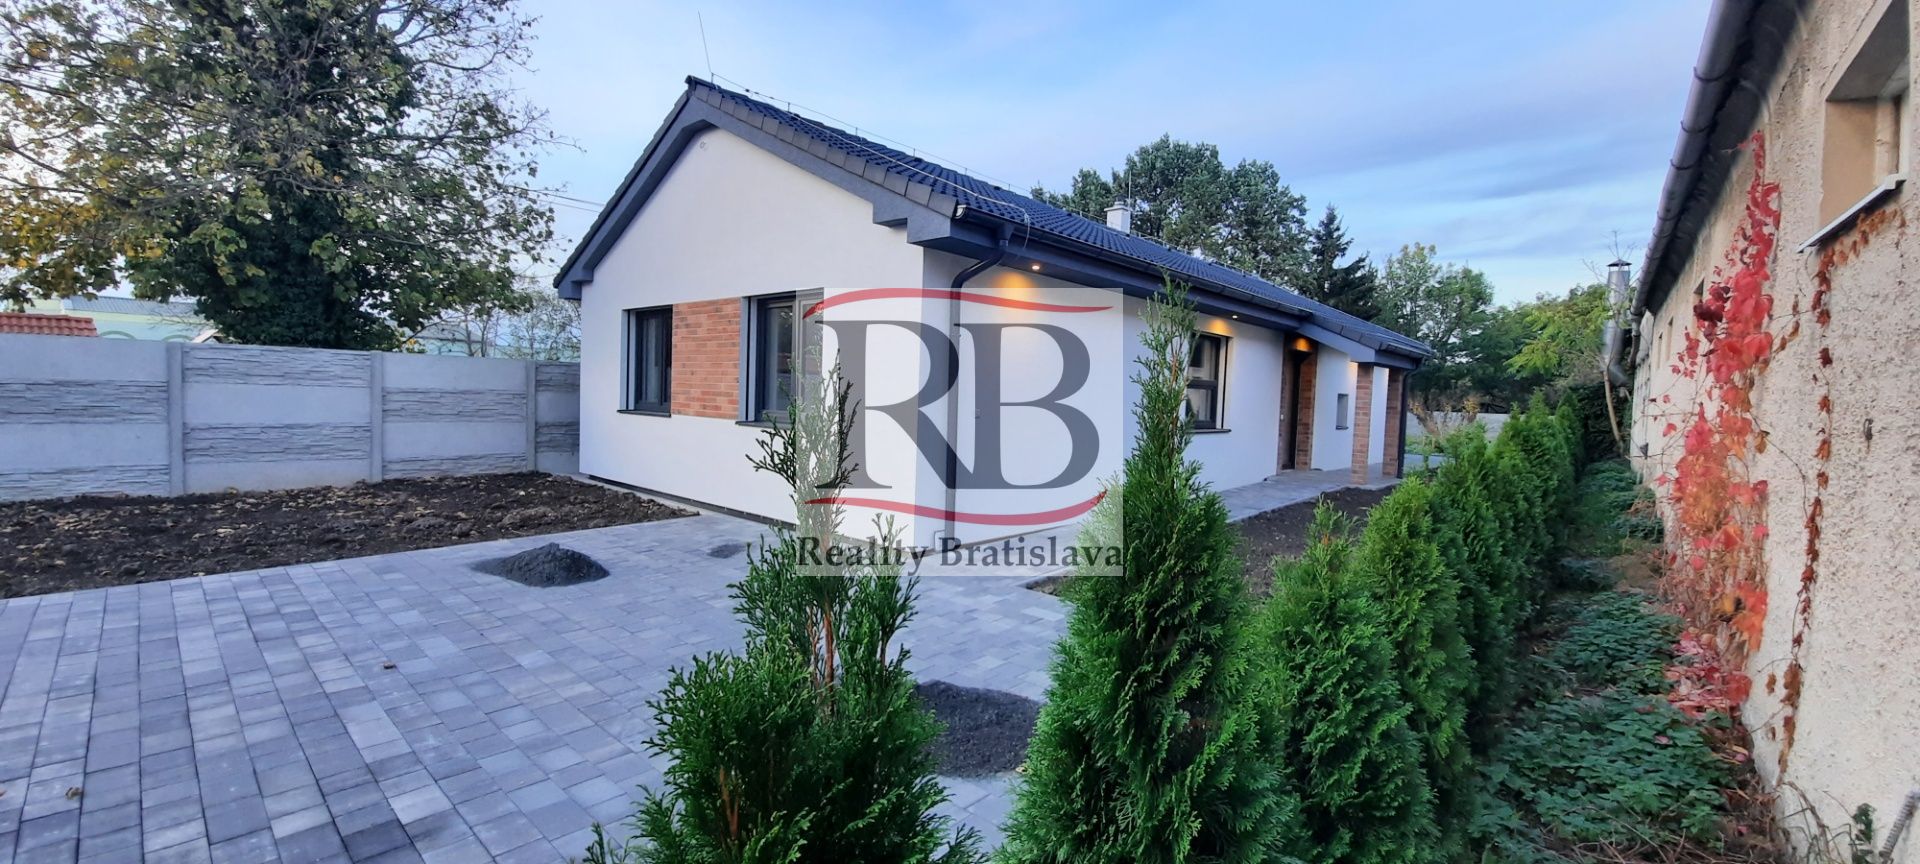 Rodinný dom-Predaj-Čierny Brod-229500.00 €